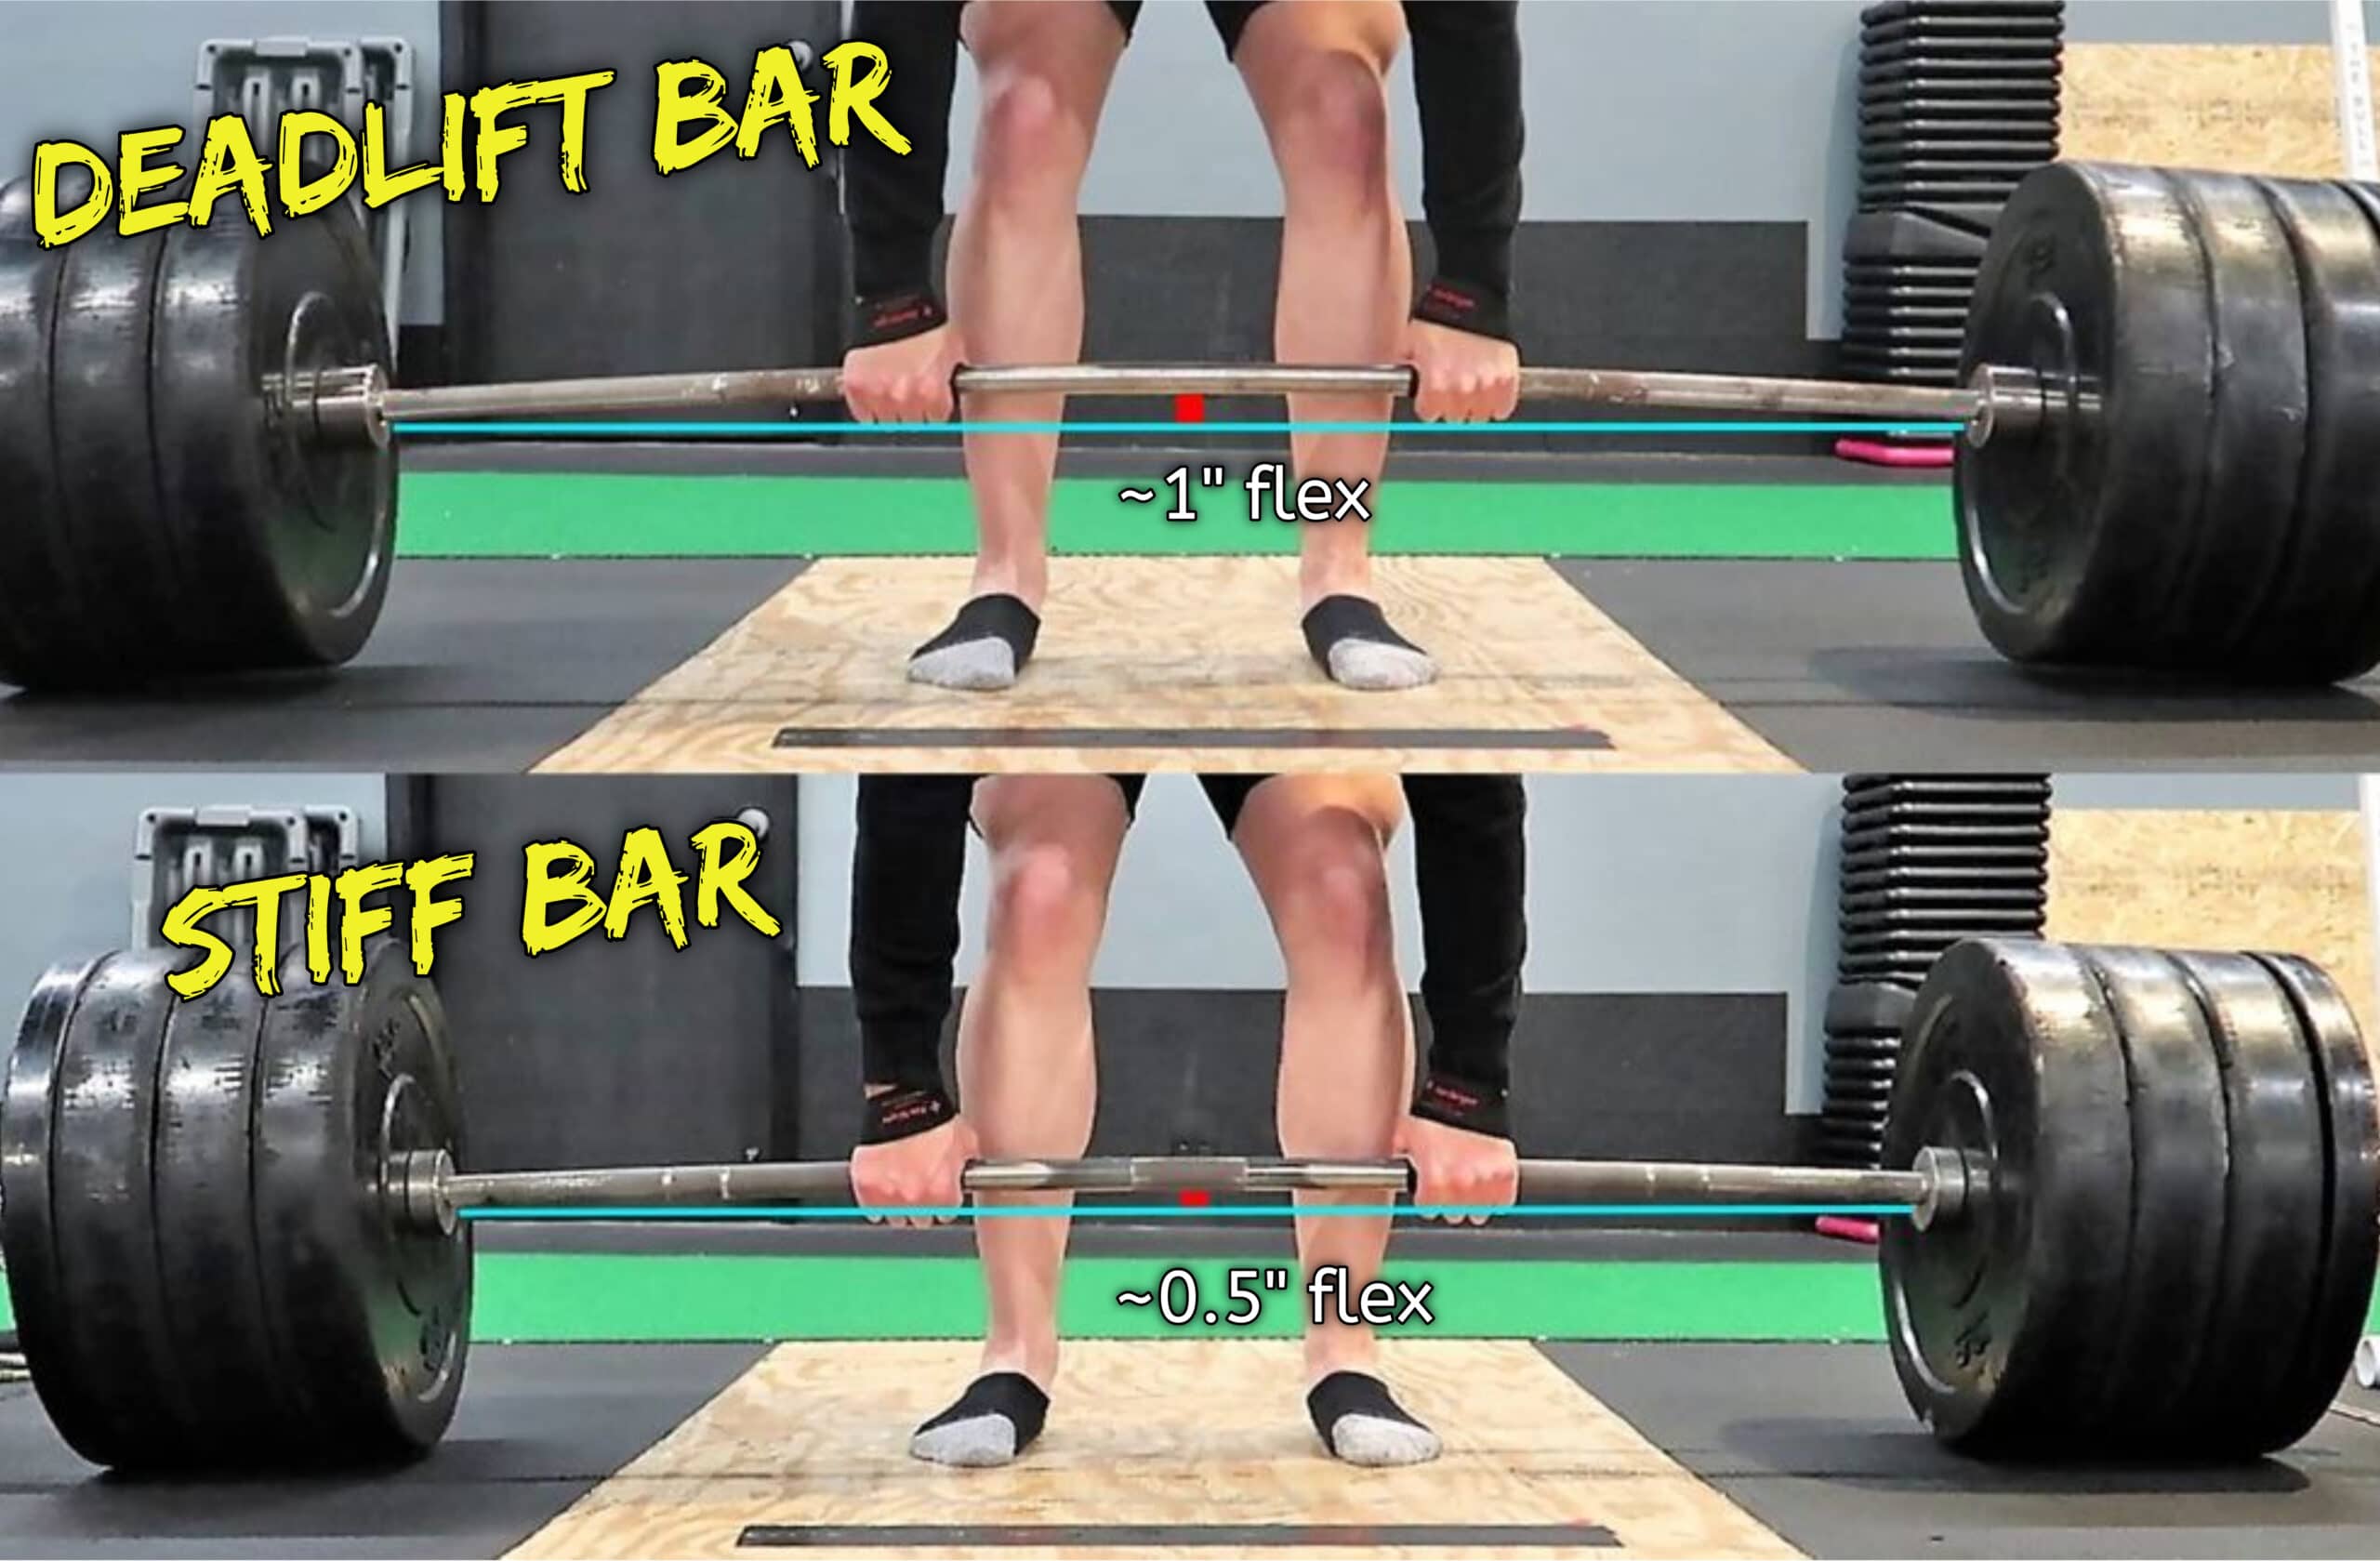 Deadlift Bar vs Stiff Bar Flex